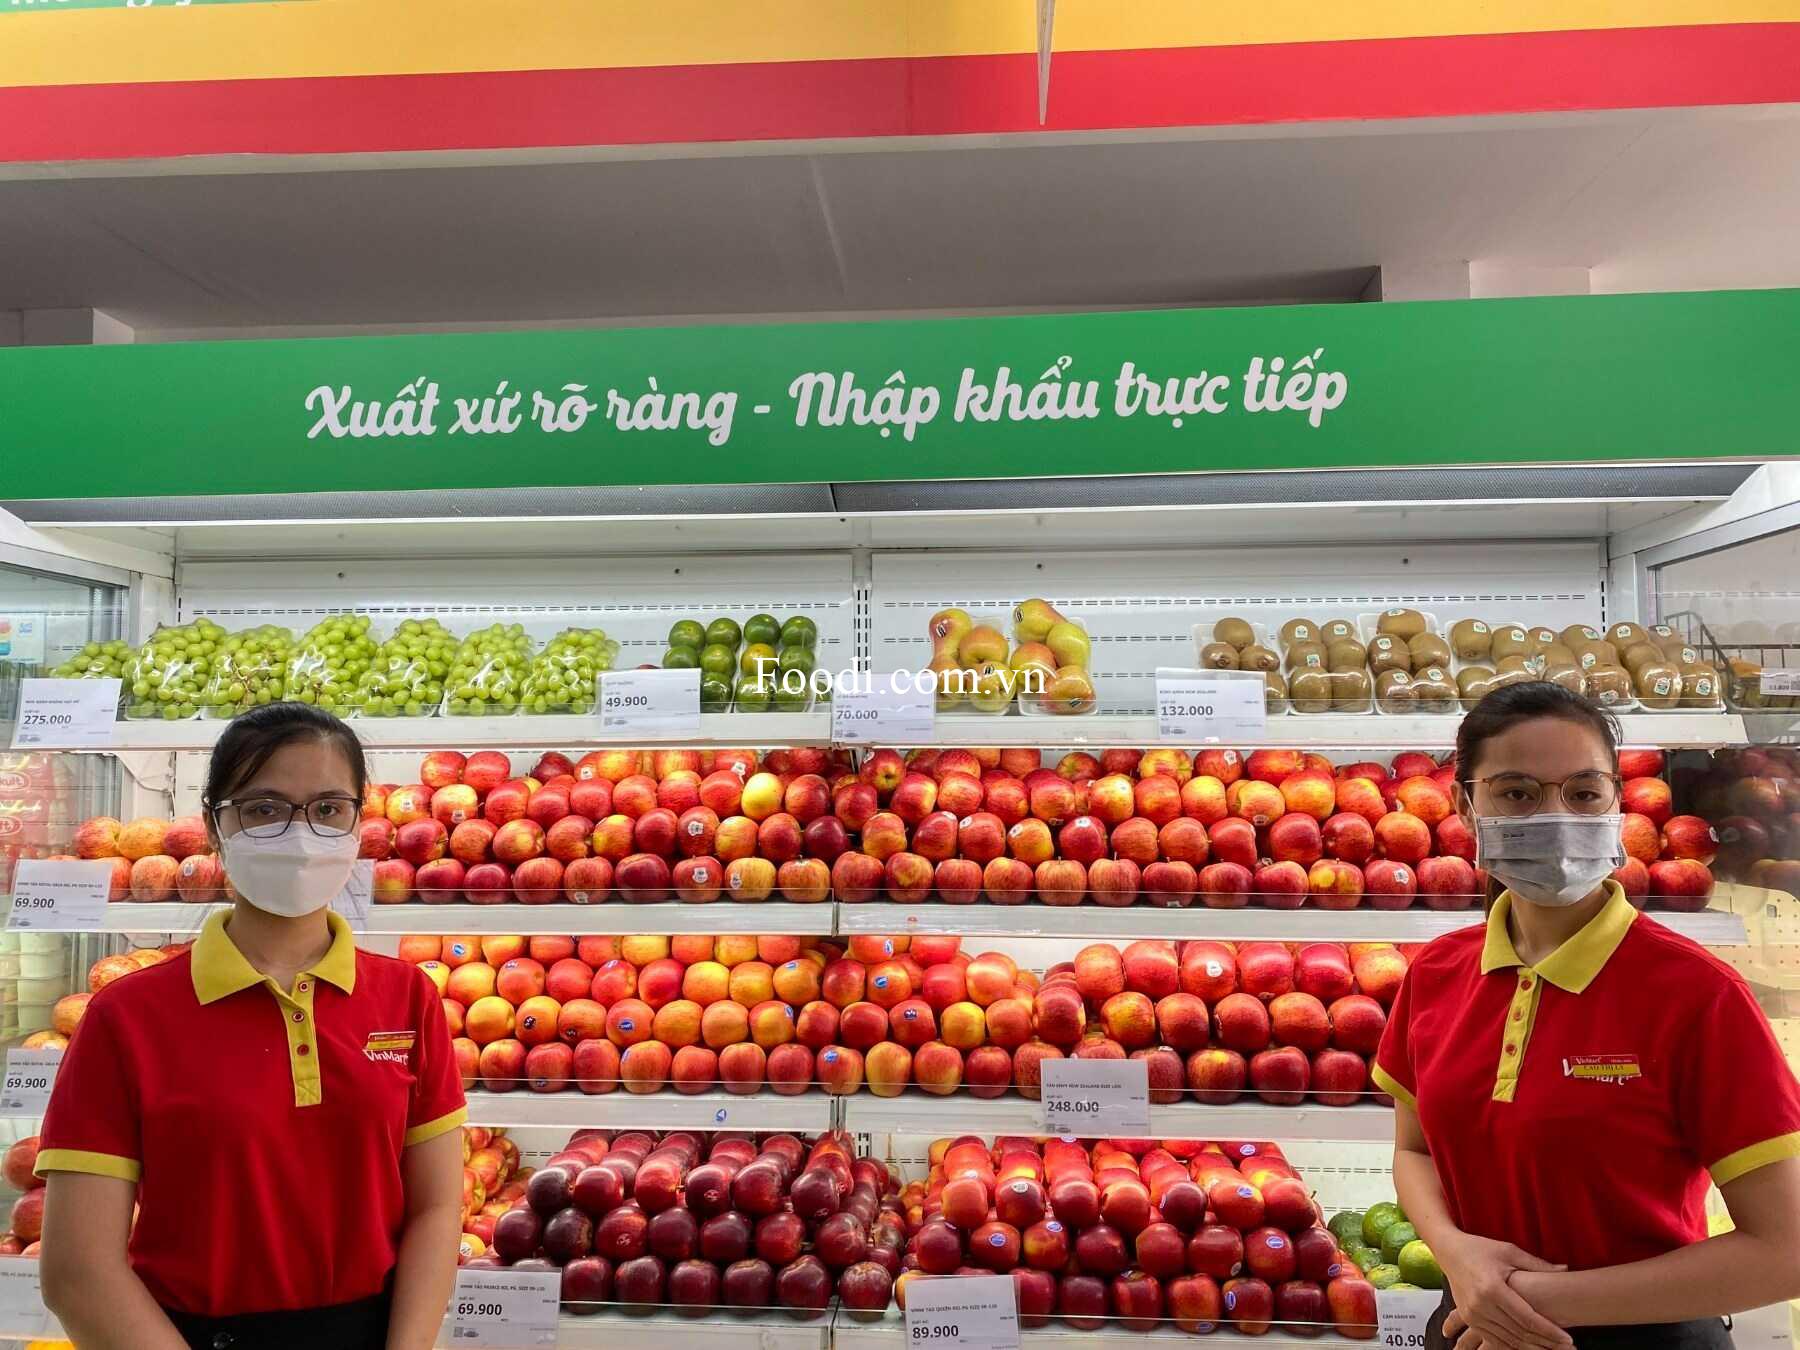 Sài Gòn - 20 cửa hàng tốt nhất cuối cùng ở Thành phố Hồ Chí Minh nổi tiếng về chất lượng